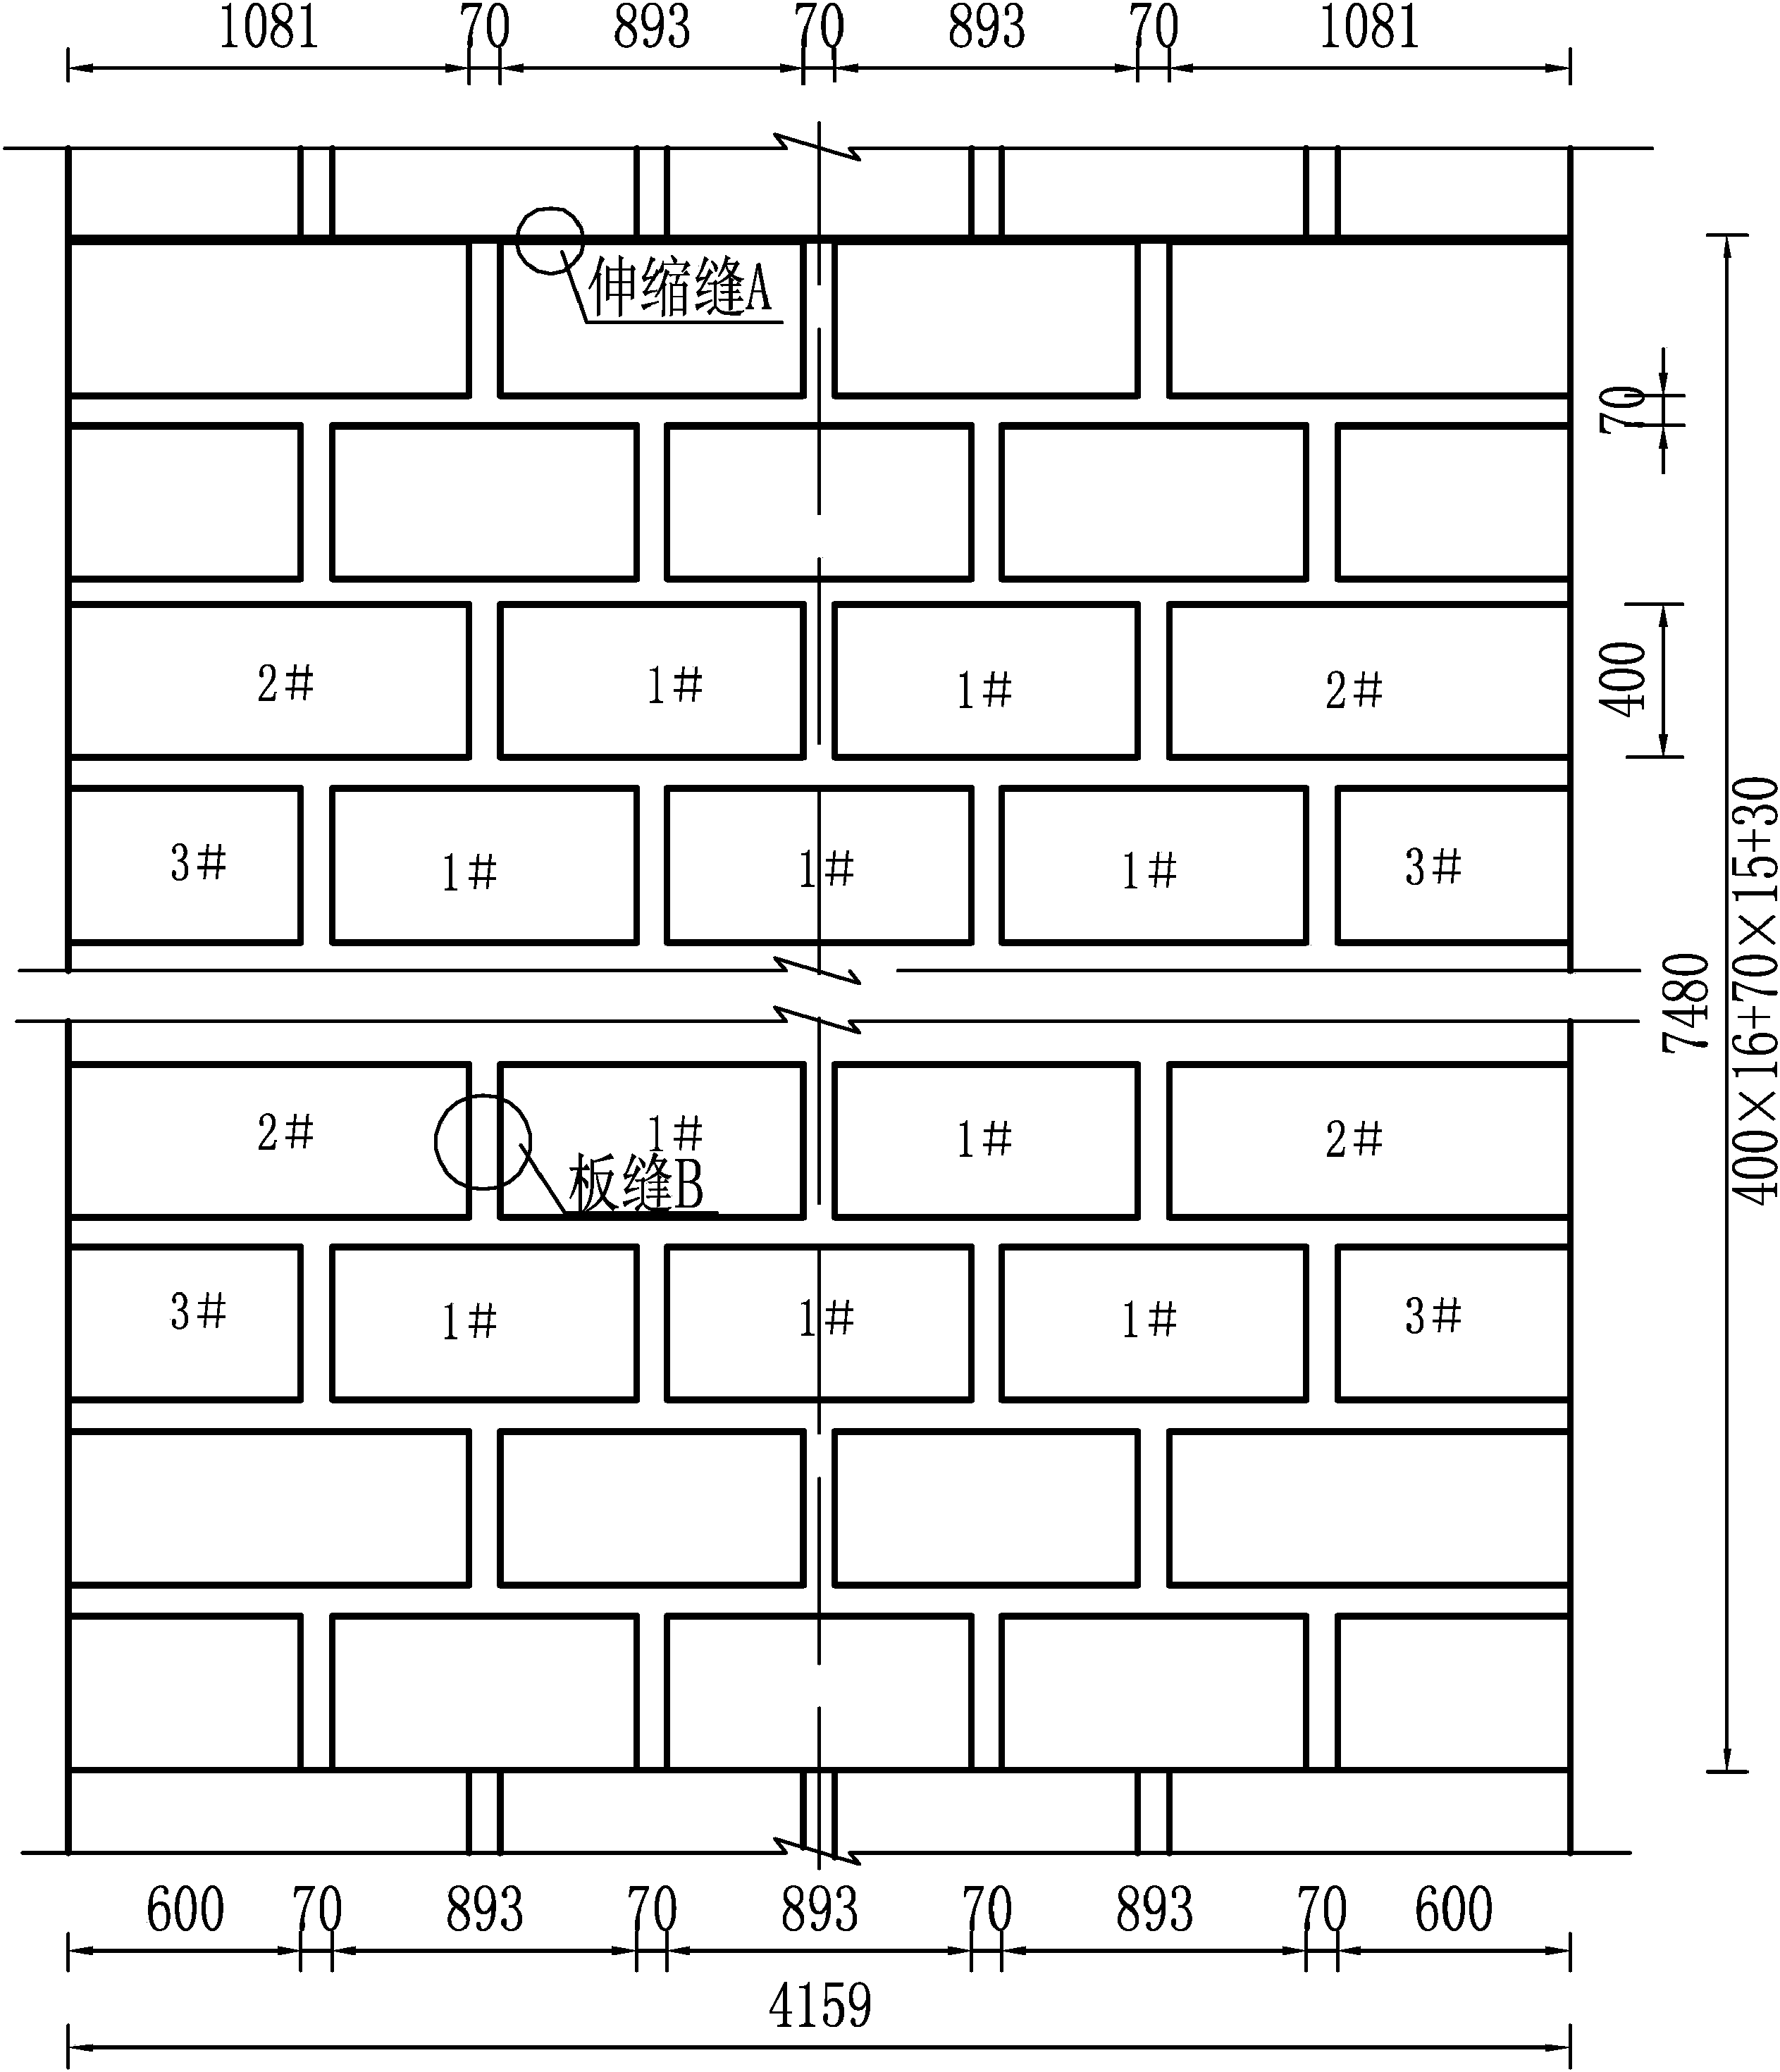 弧形渠道 (D=2.6m)砌护图